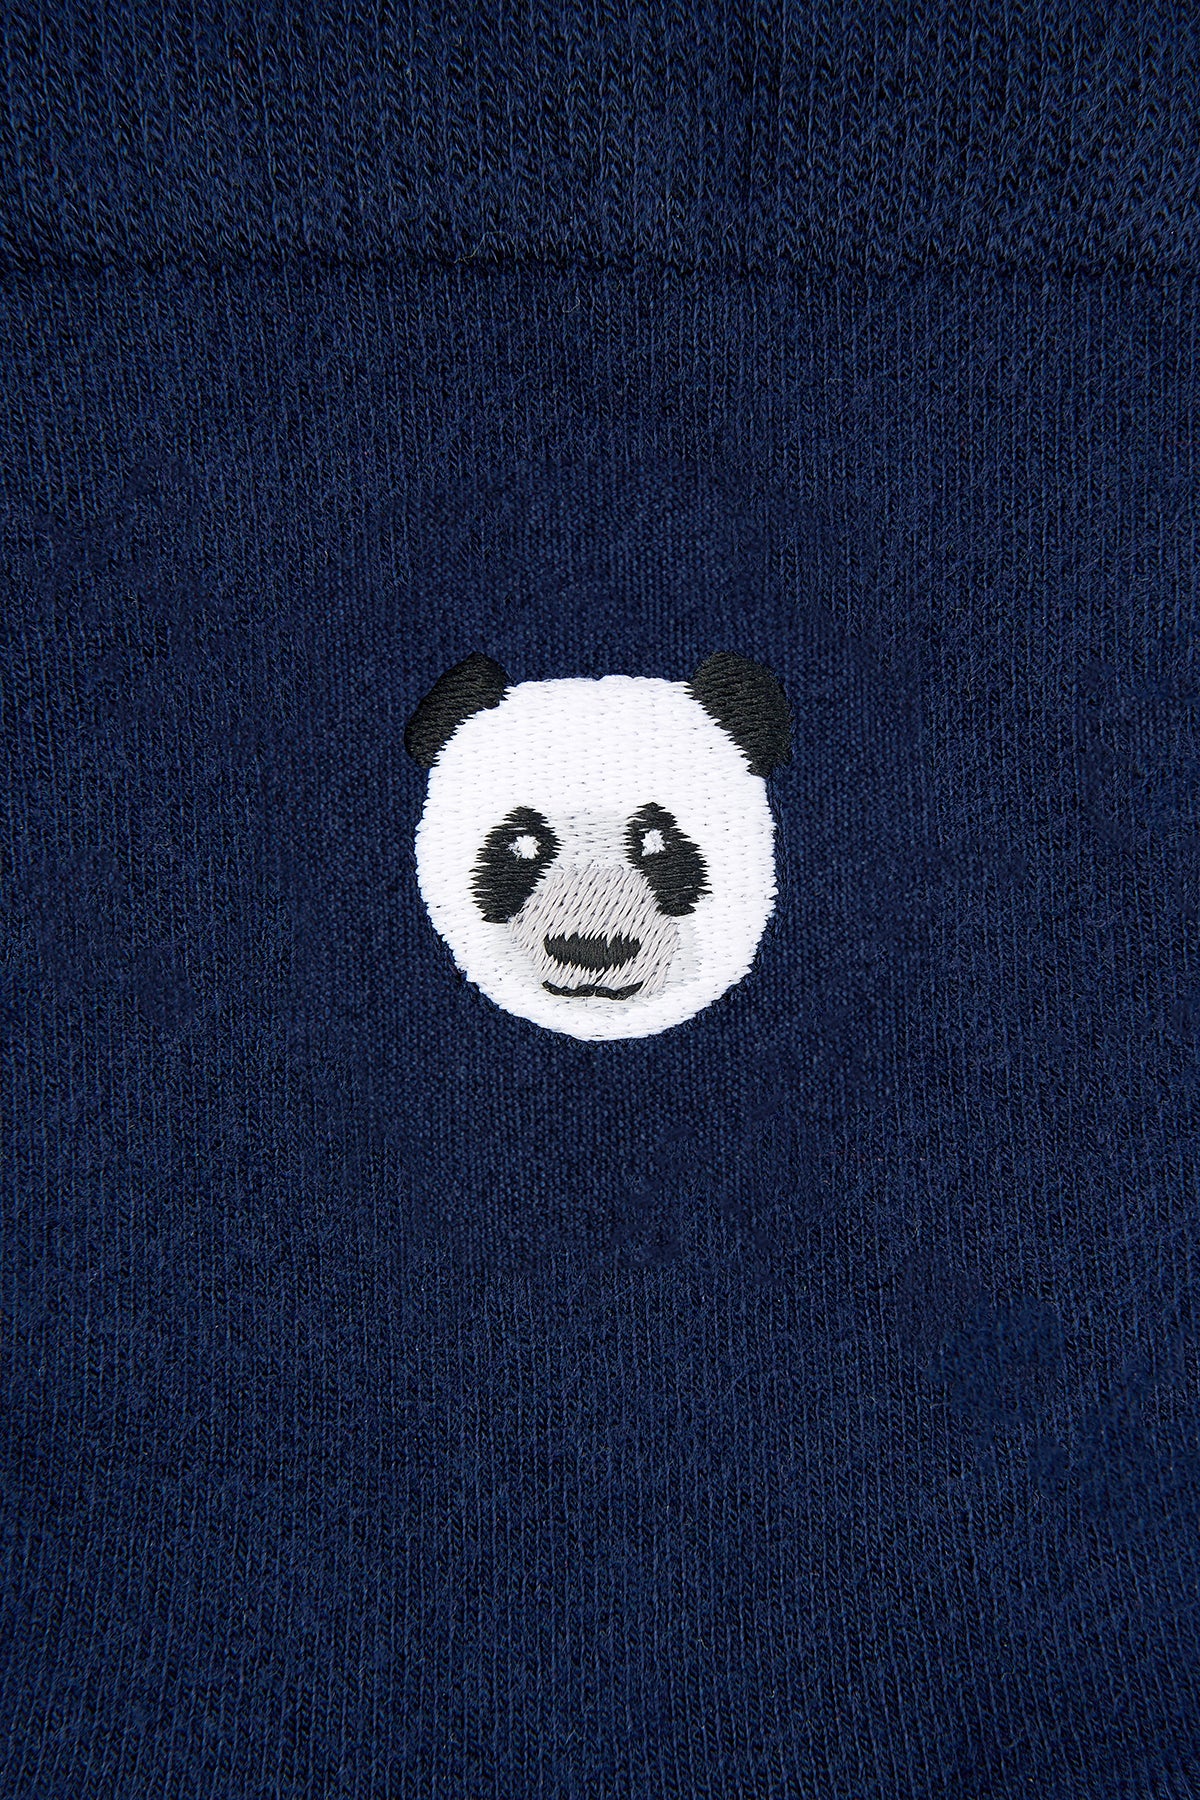 Panda Çorap - Lacivert